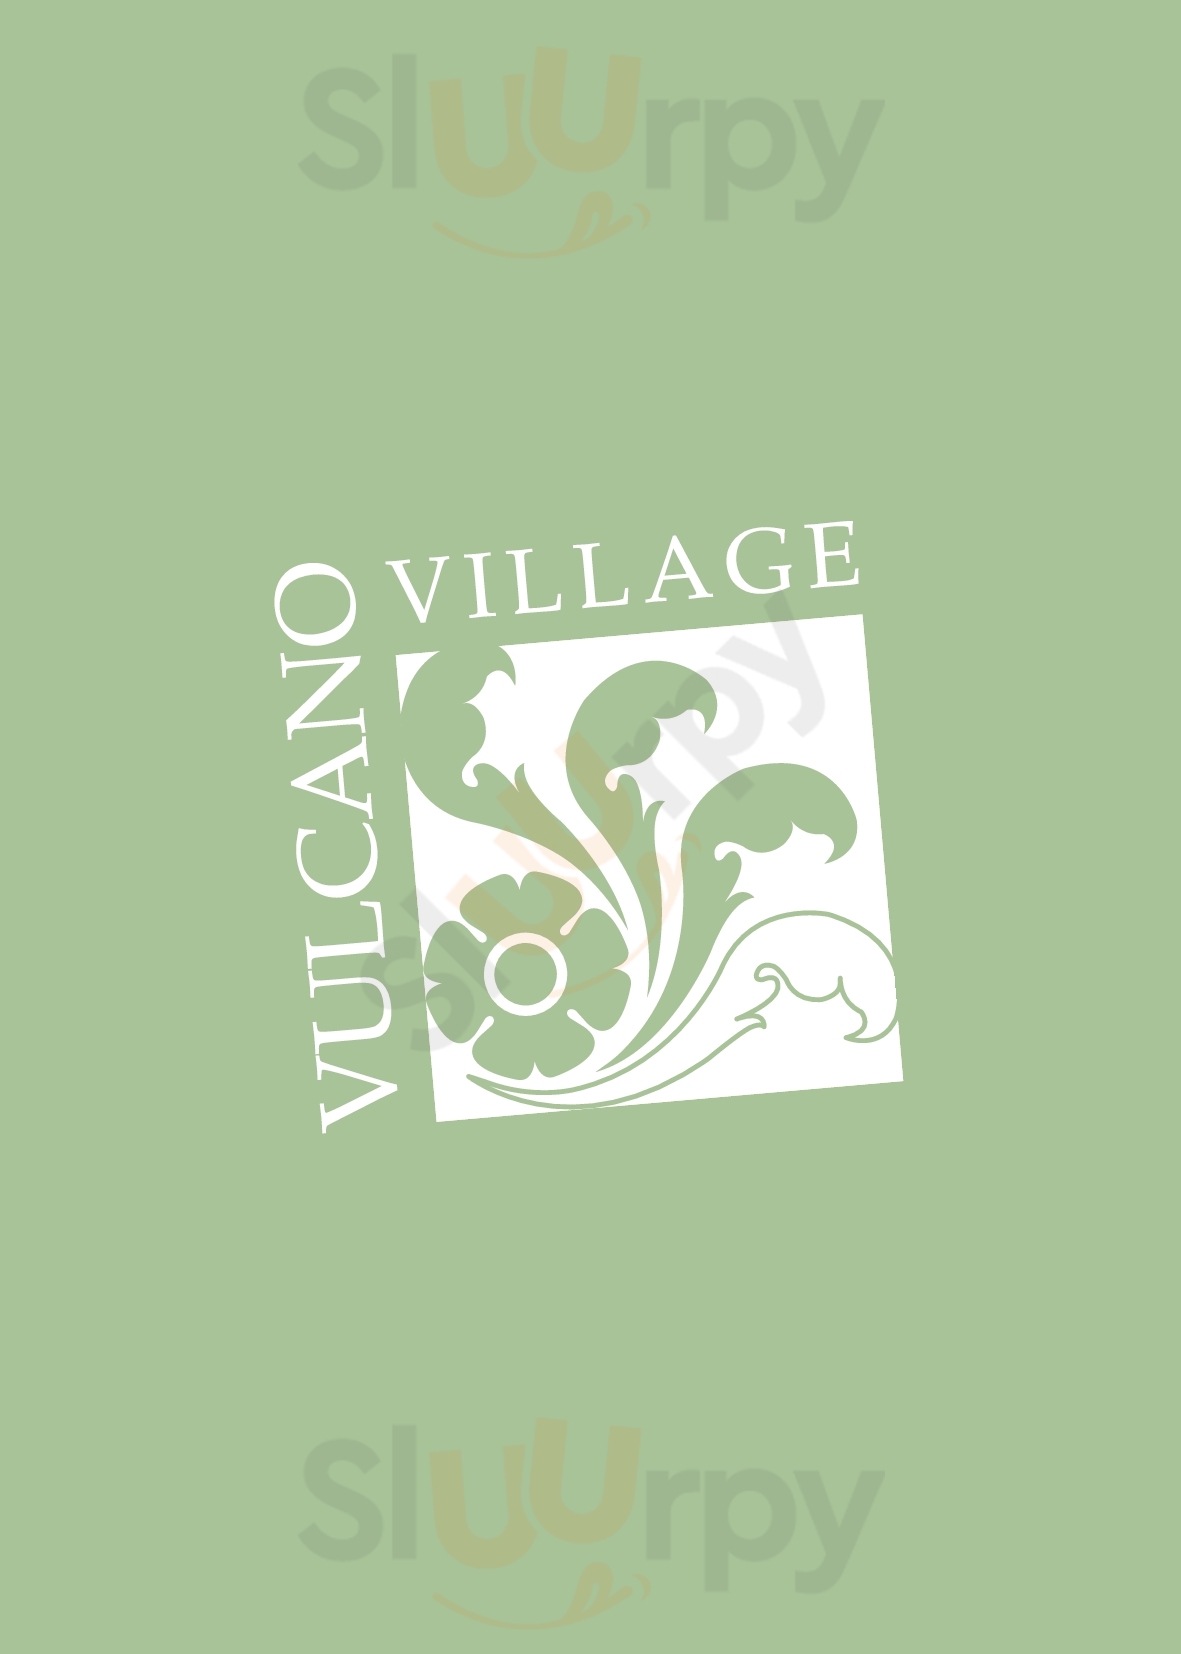 Albergo Vulcano Village Lovere menù 1 pagina